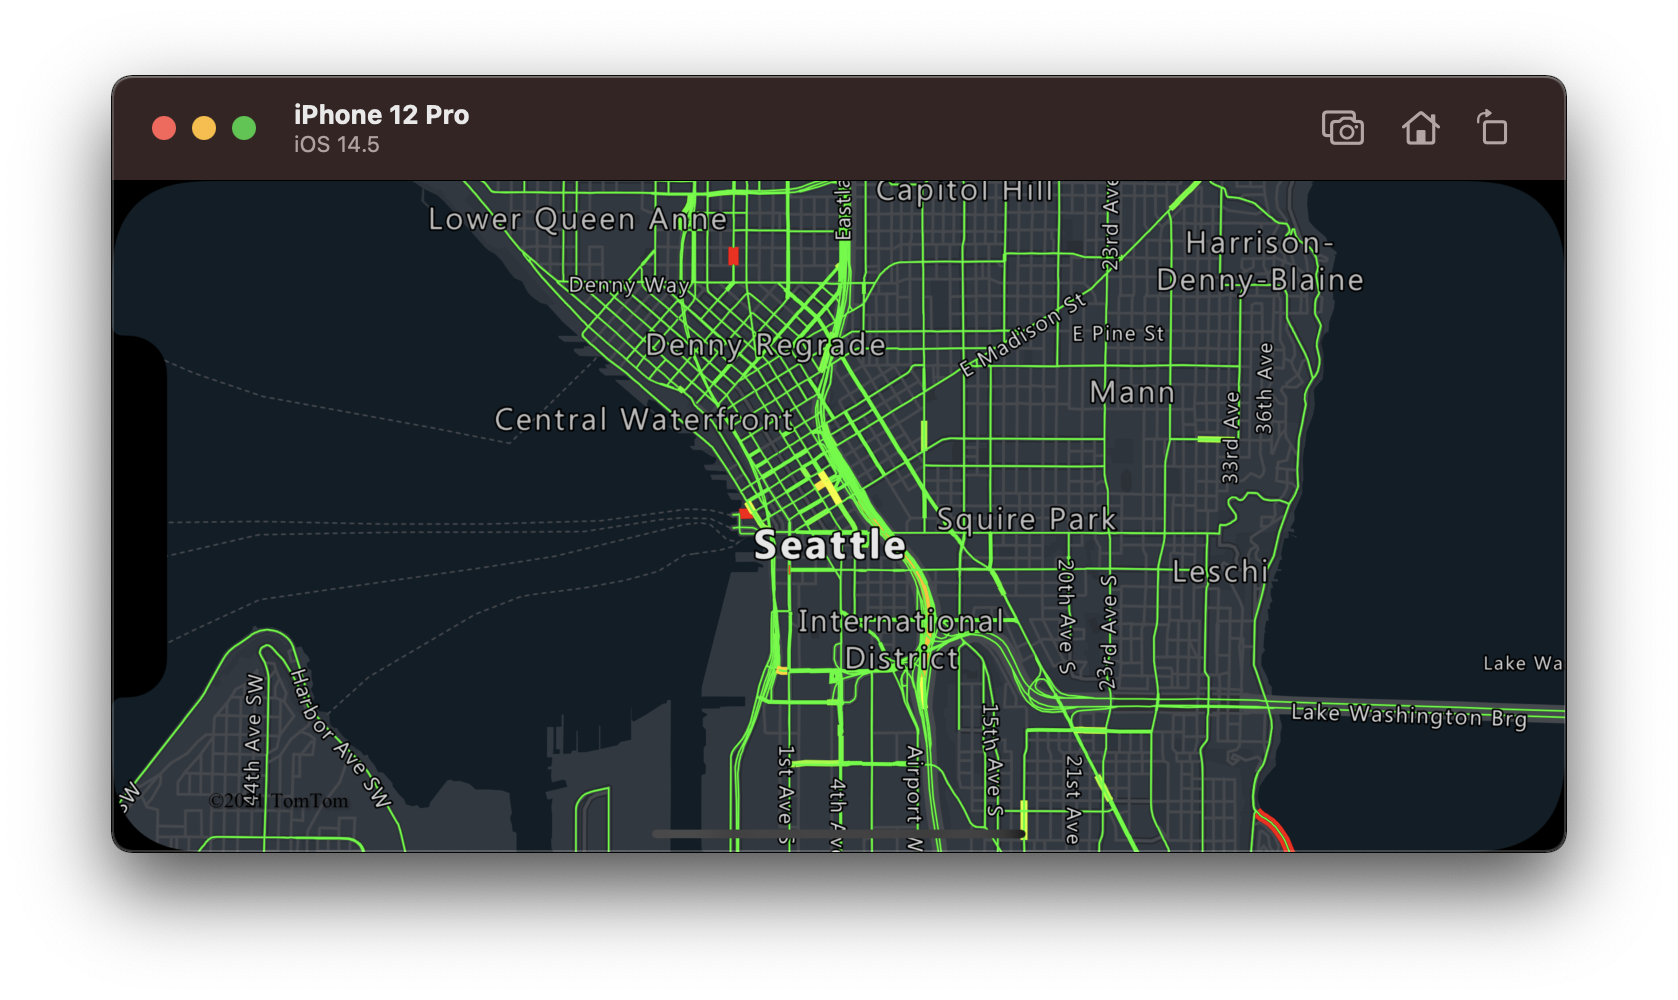 Cuplikan layar peta dengan garis jalan berkode warna memperlihatkan tingkat arus lalu lintas.